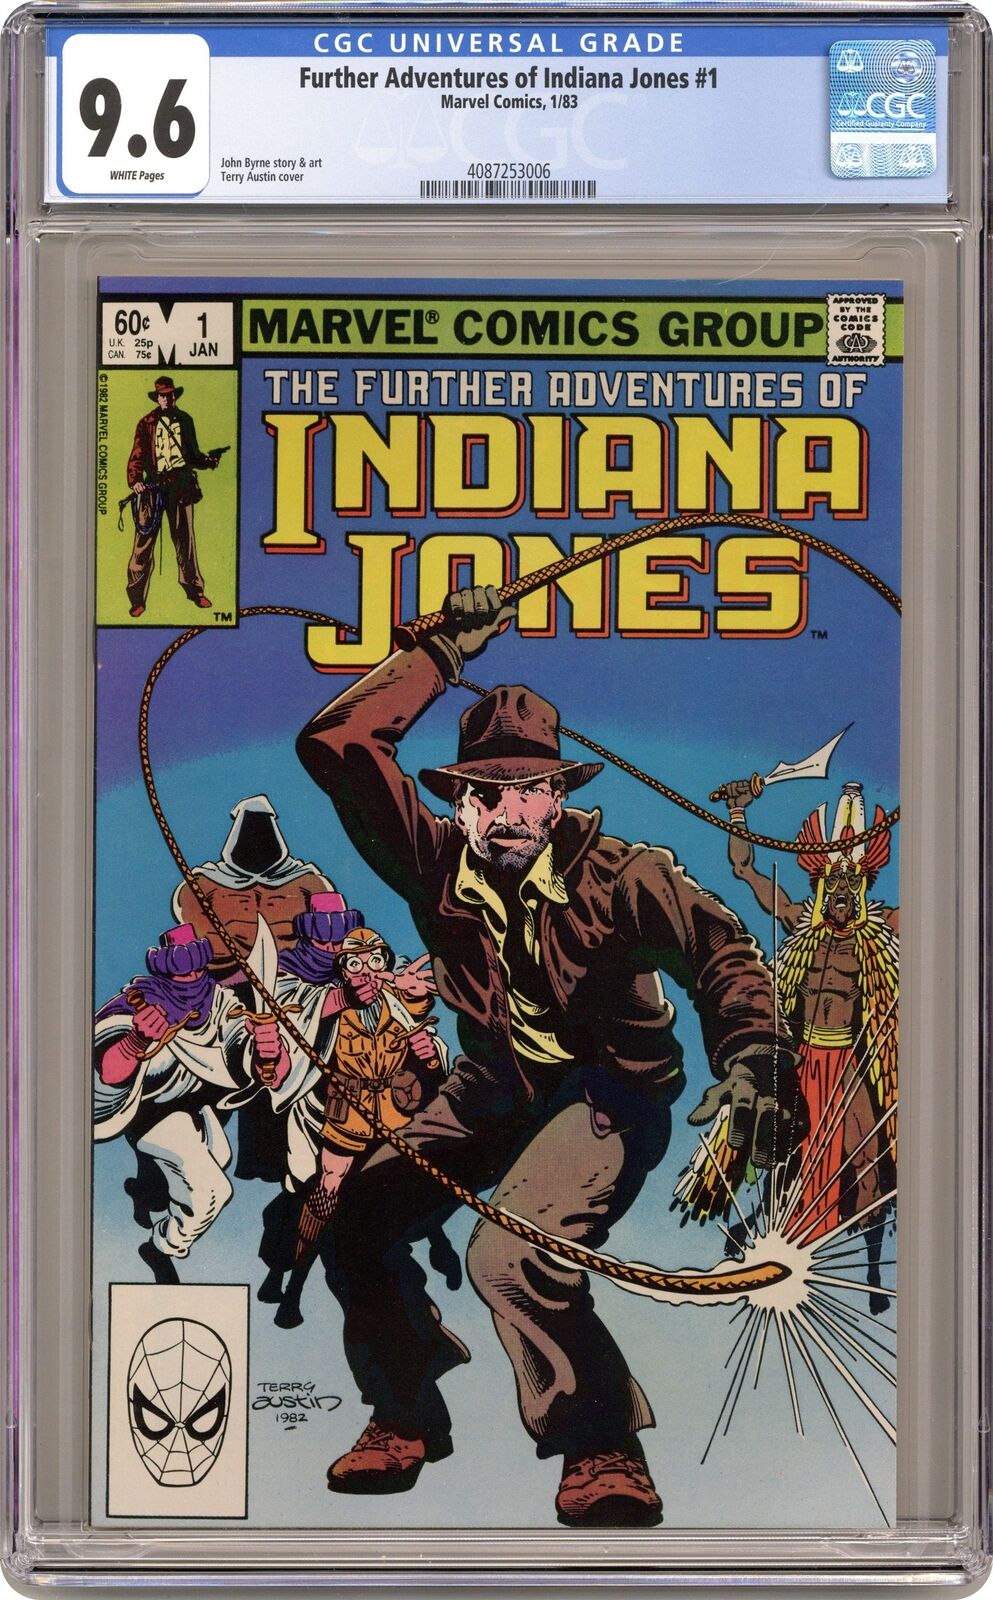 Further Adventures of Indiana Jones #1 CGC 9.6 1983 4087253006